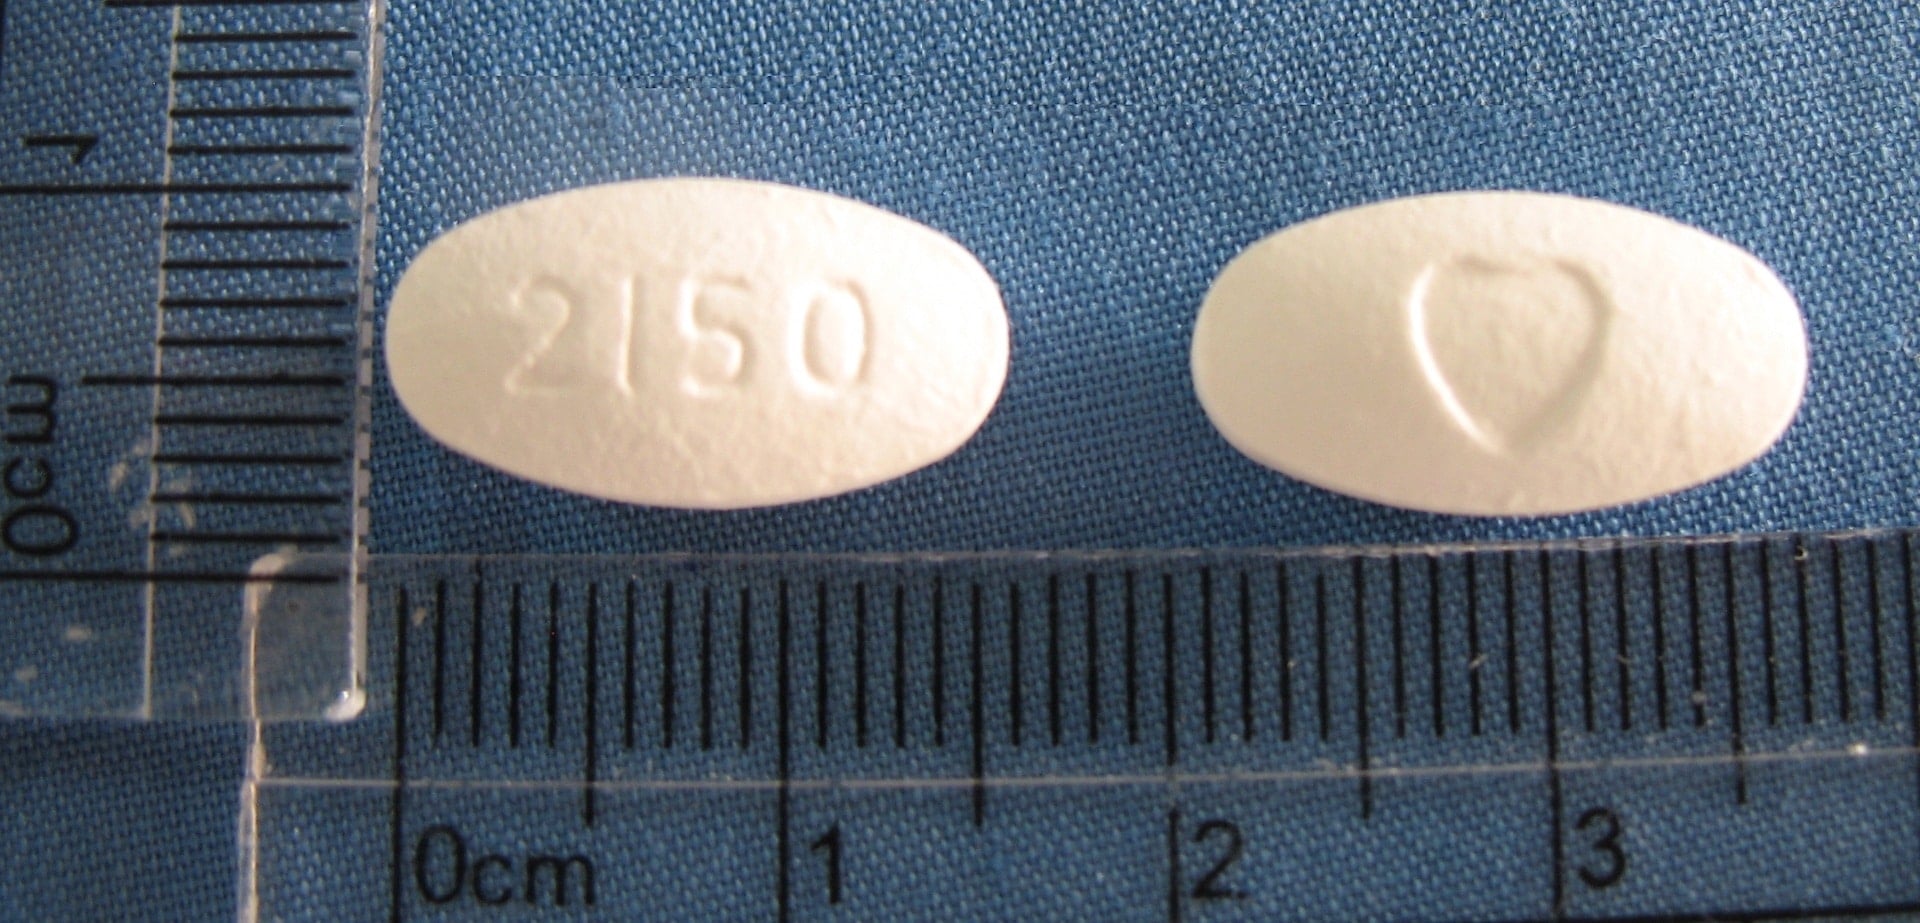 脈莎平膜衣錠 50 毫克（Cosar F.C. Tablets 50 mg）